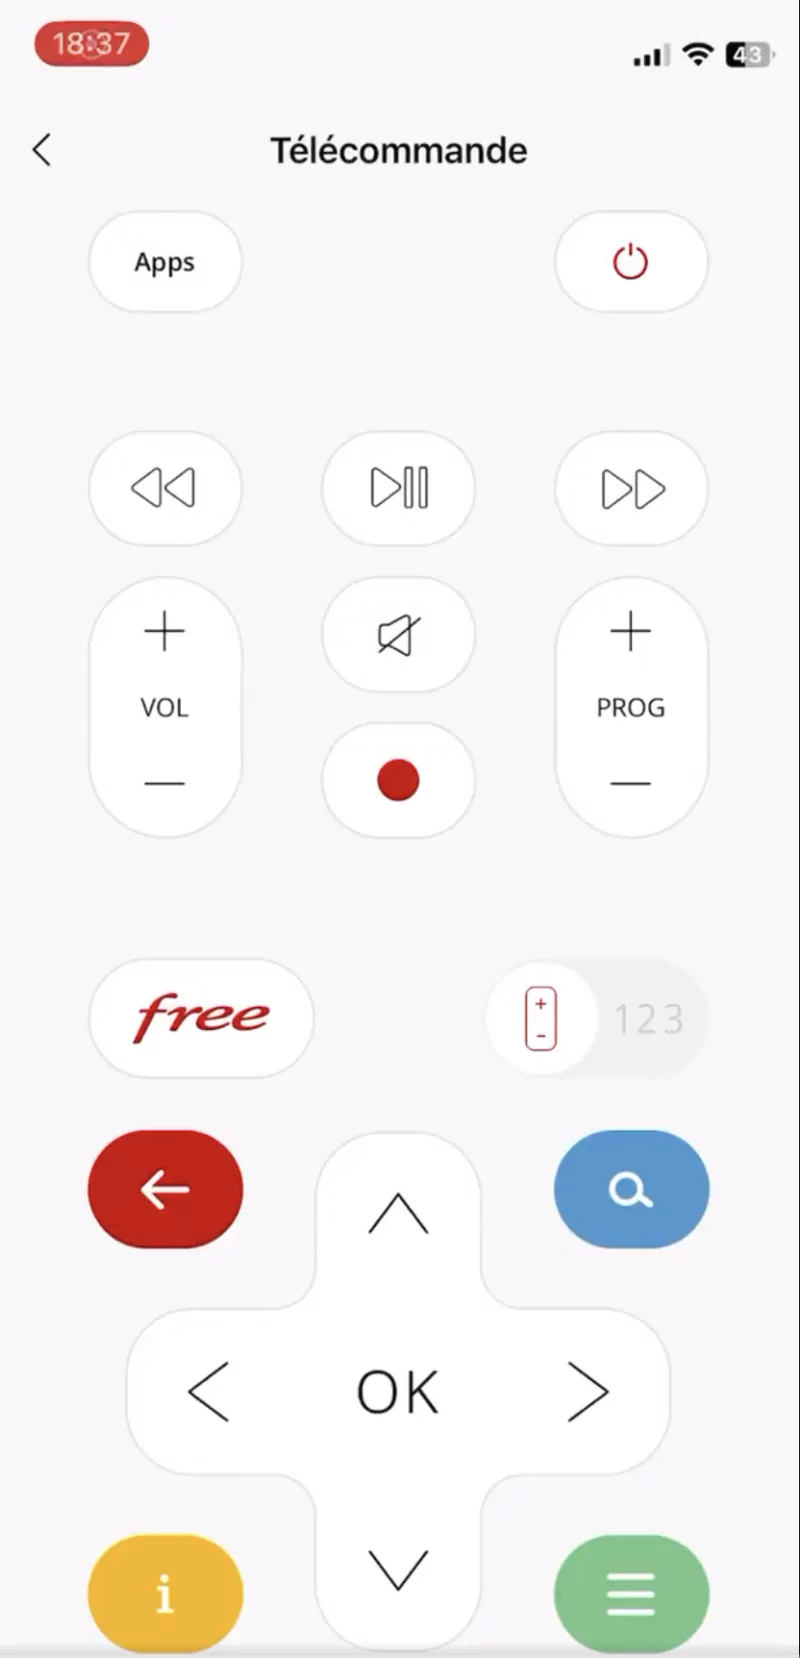 Freeteuse - Télécommande Freebox Révolution/Delta - Téléchargement de l'APK  pour Android